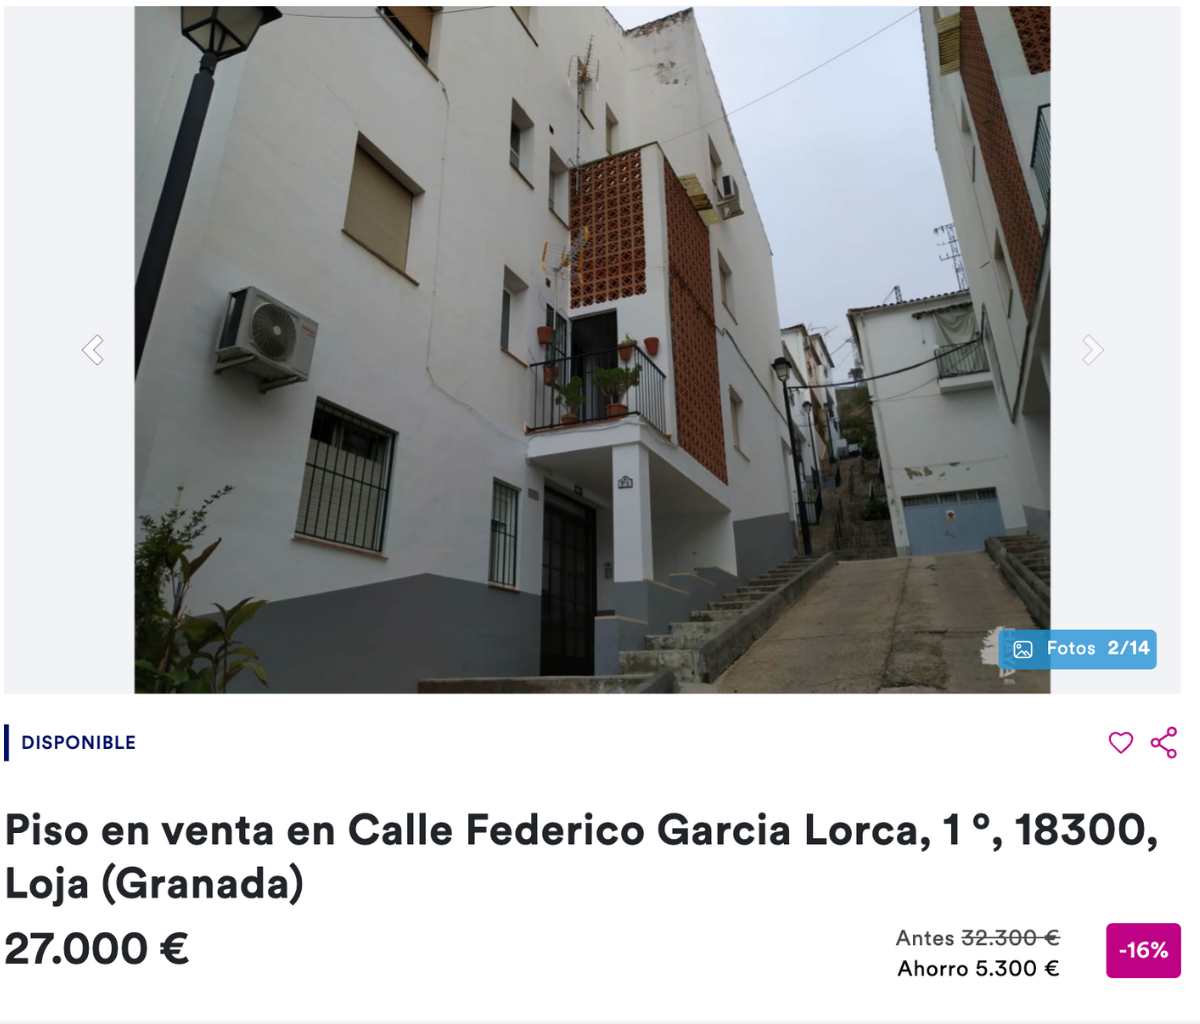 Piso en venta en Loja (Granada) por un precio de 27.000 euros